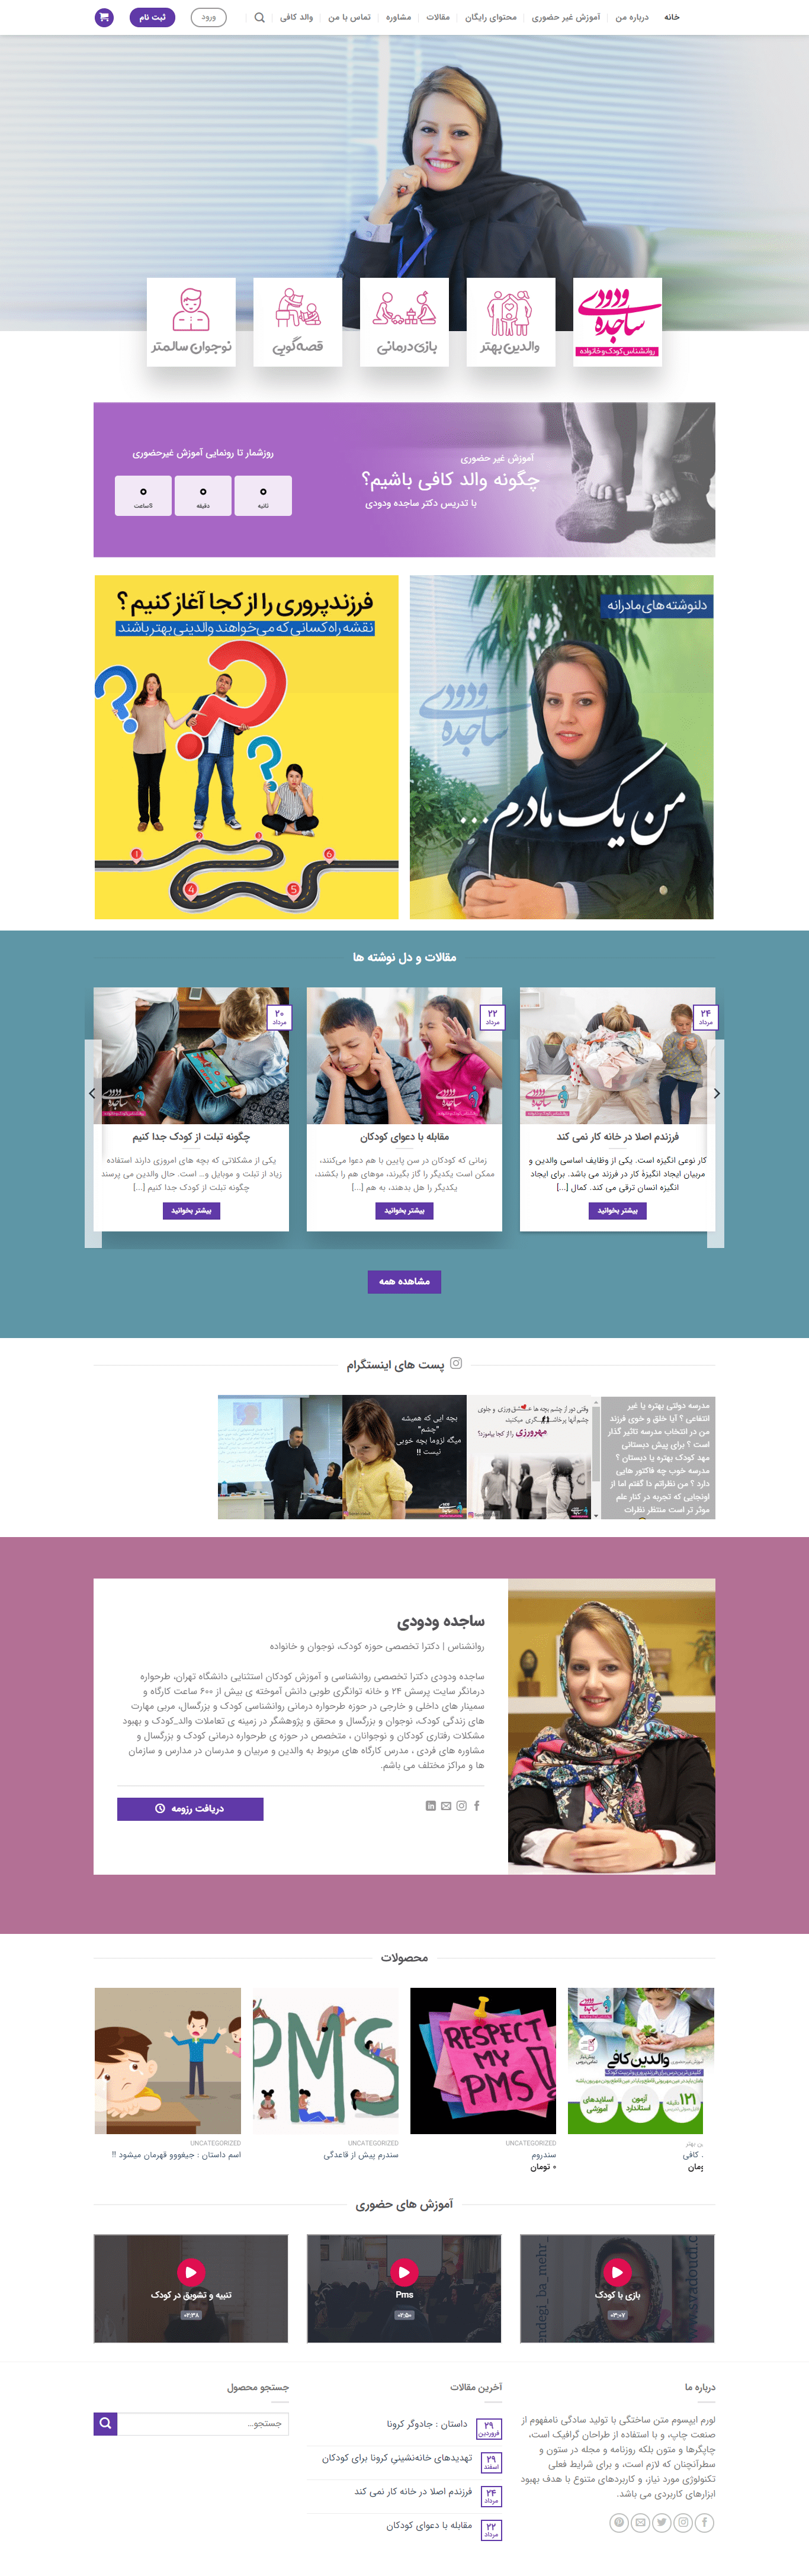 طراحی سایت آموزشی ساجده ودودی